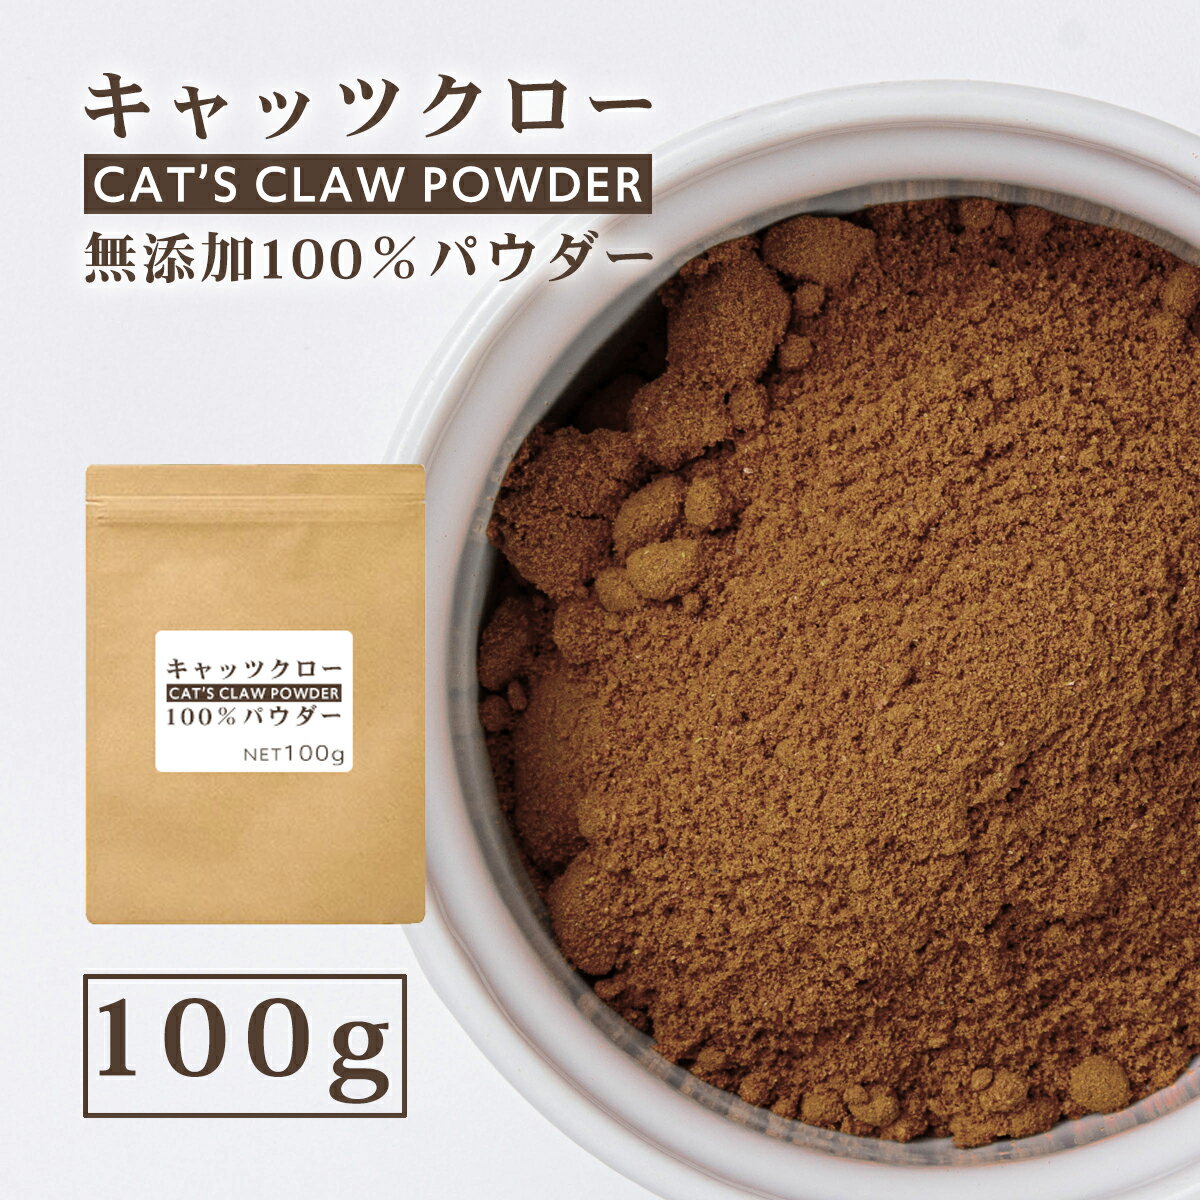 キャッツクローパウダー 100g キャッツクロー100% 粉末 ペルー産 キャッツクロウ 南米 健康食品 スーパーフード サプリメント